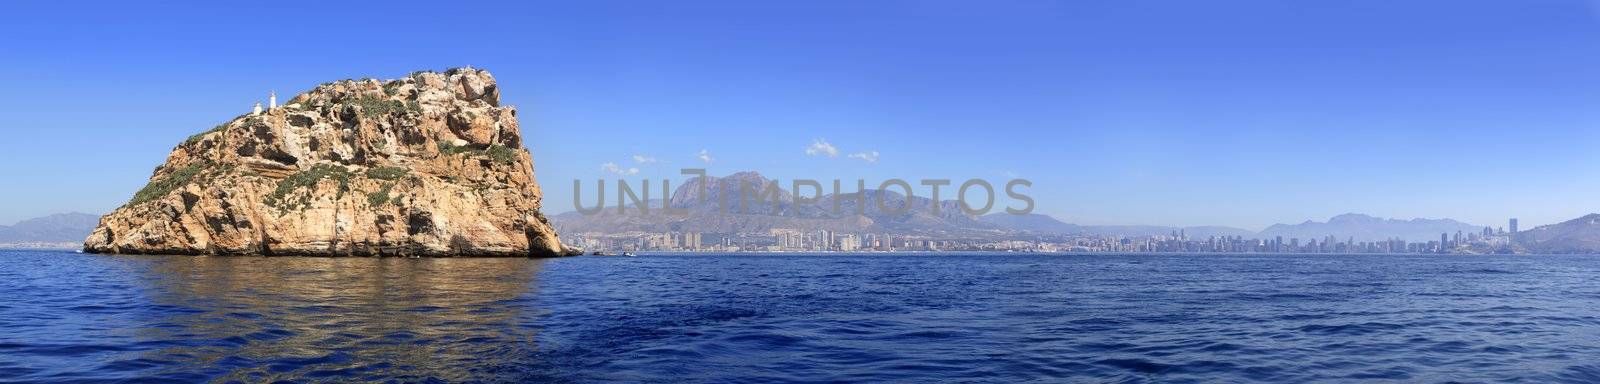 Benidorm panoramic view from island by lunamarina